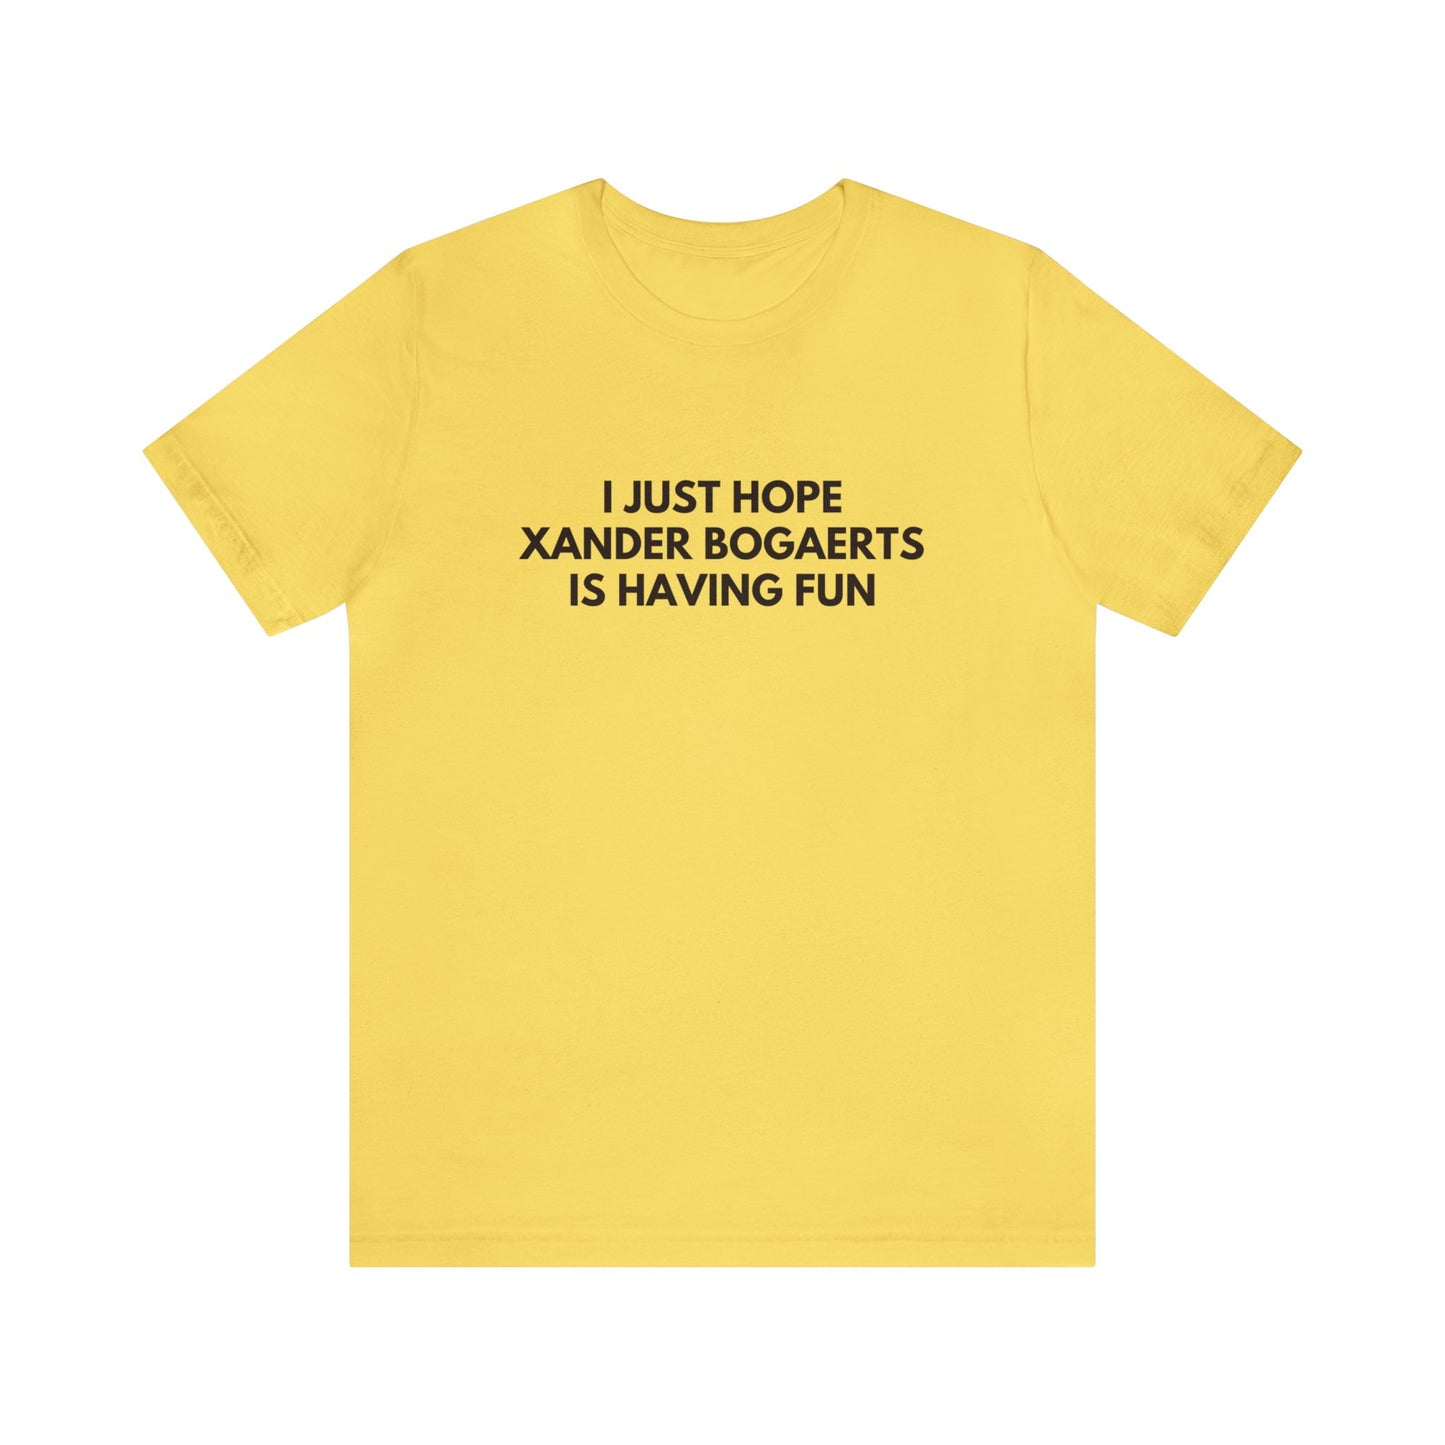 Xander Bogaerts Having Fun - Unisex T-shirt